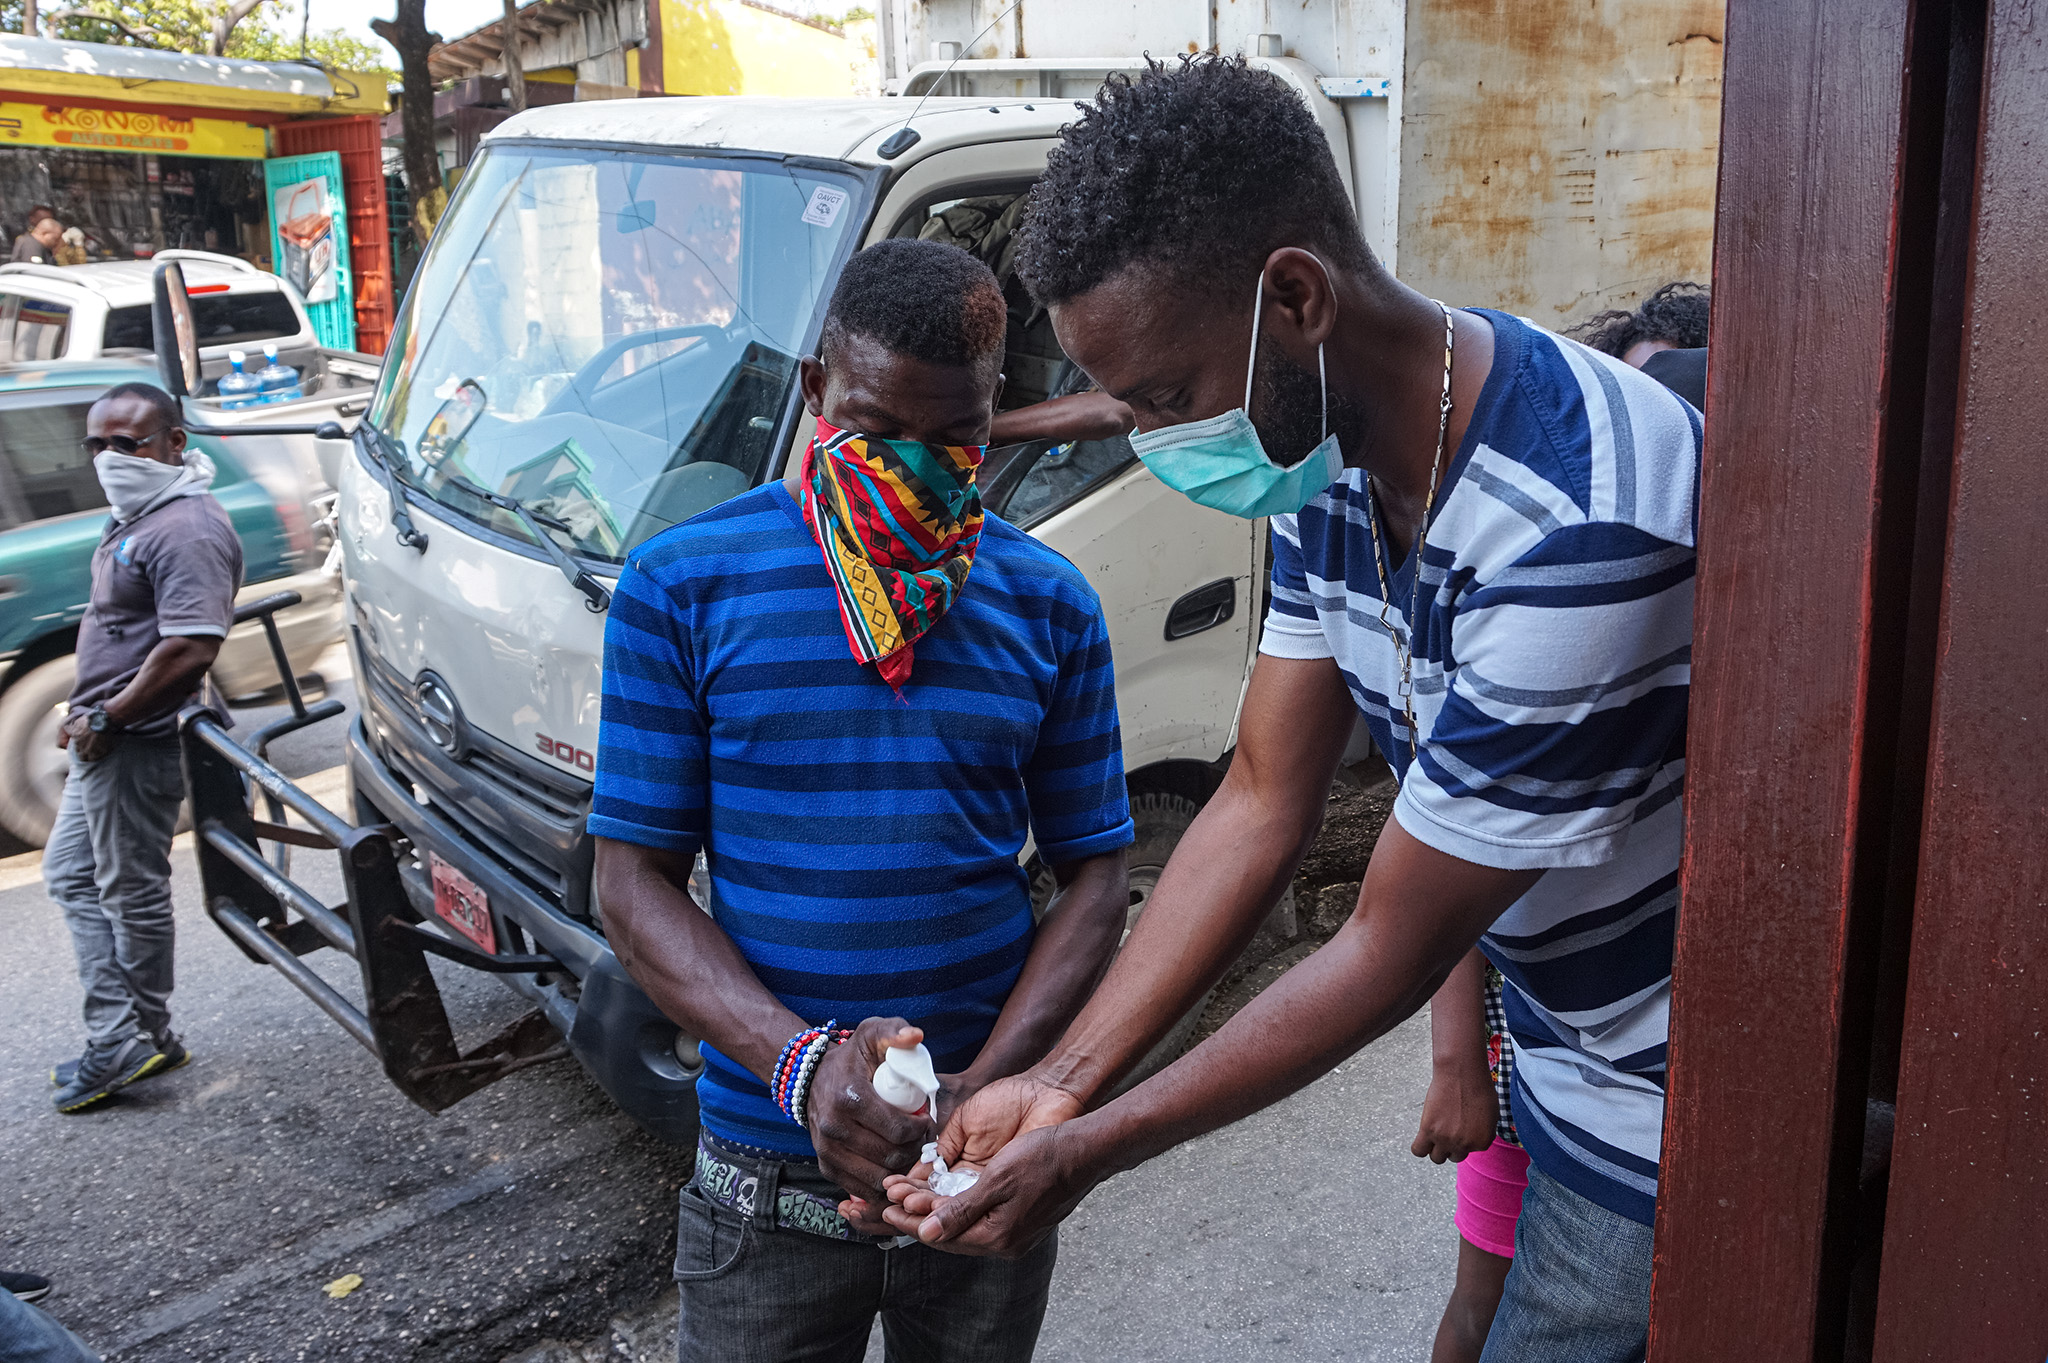 La Banque Mondiale accorde 9.5 millions de dollars pour supporter la sécurité alimentaire en Haïti pendant la pandémie